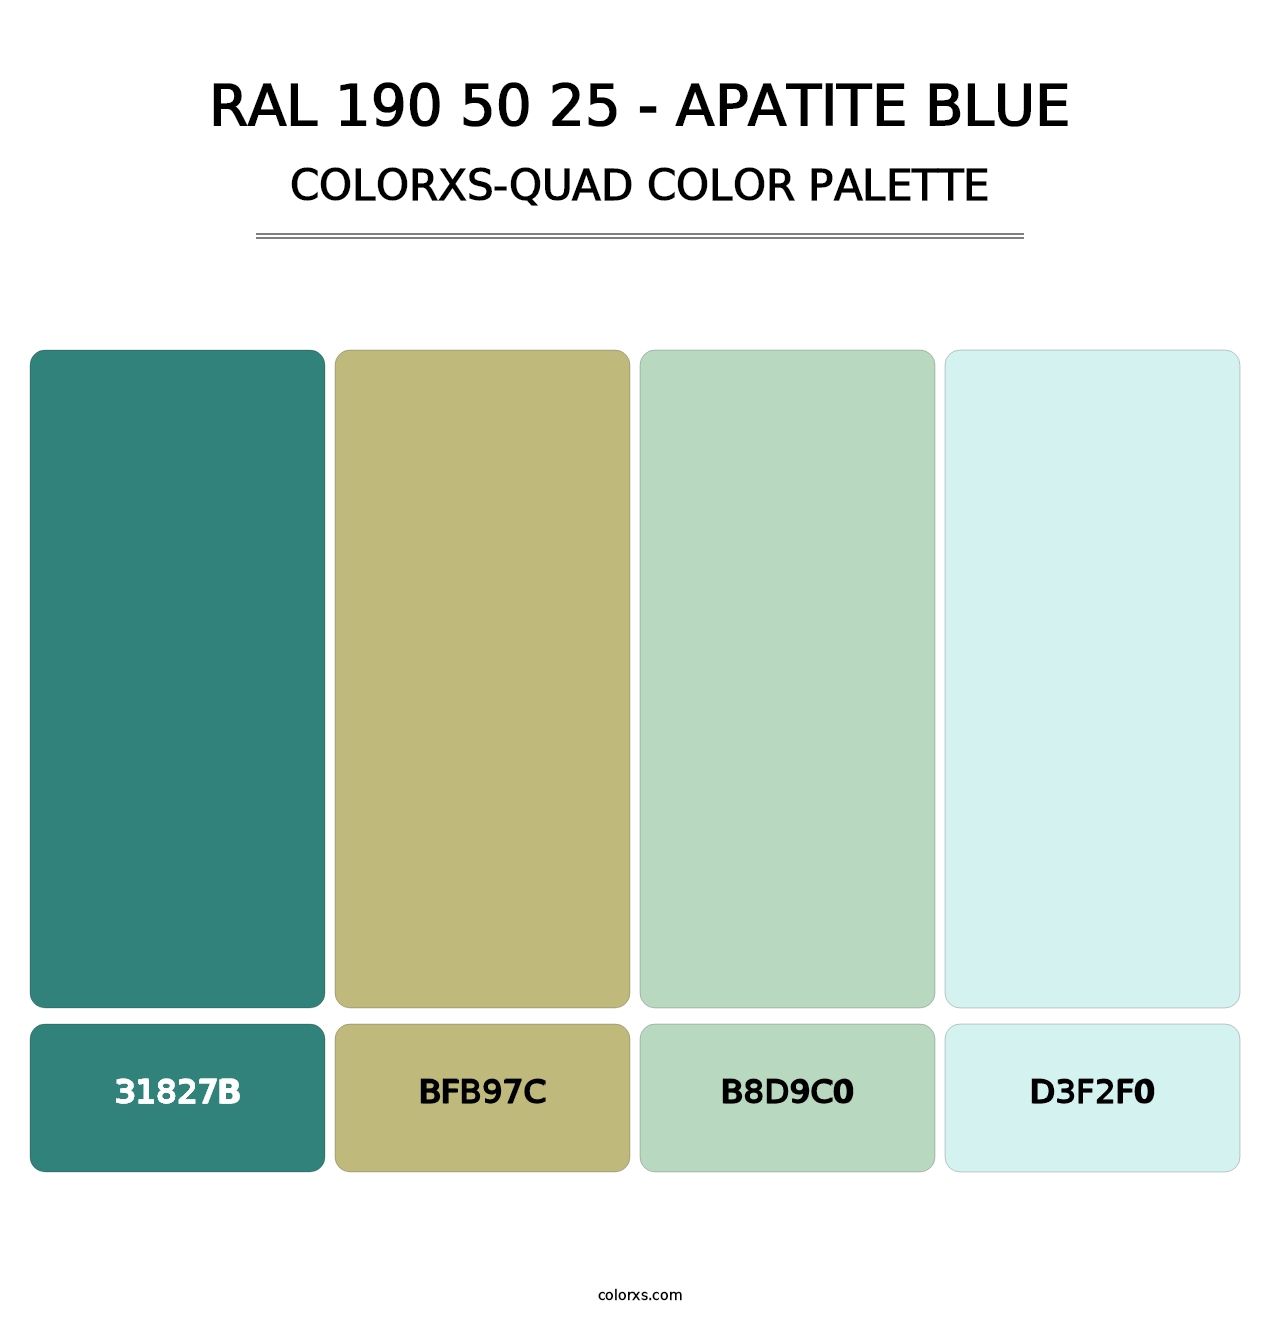 RAL 190 50 25 - Apatite Blue - Colorxs Quad Palette